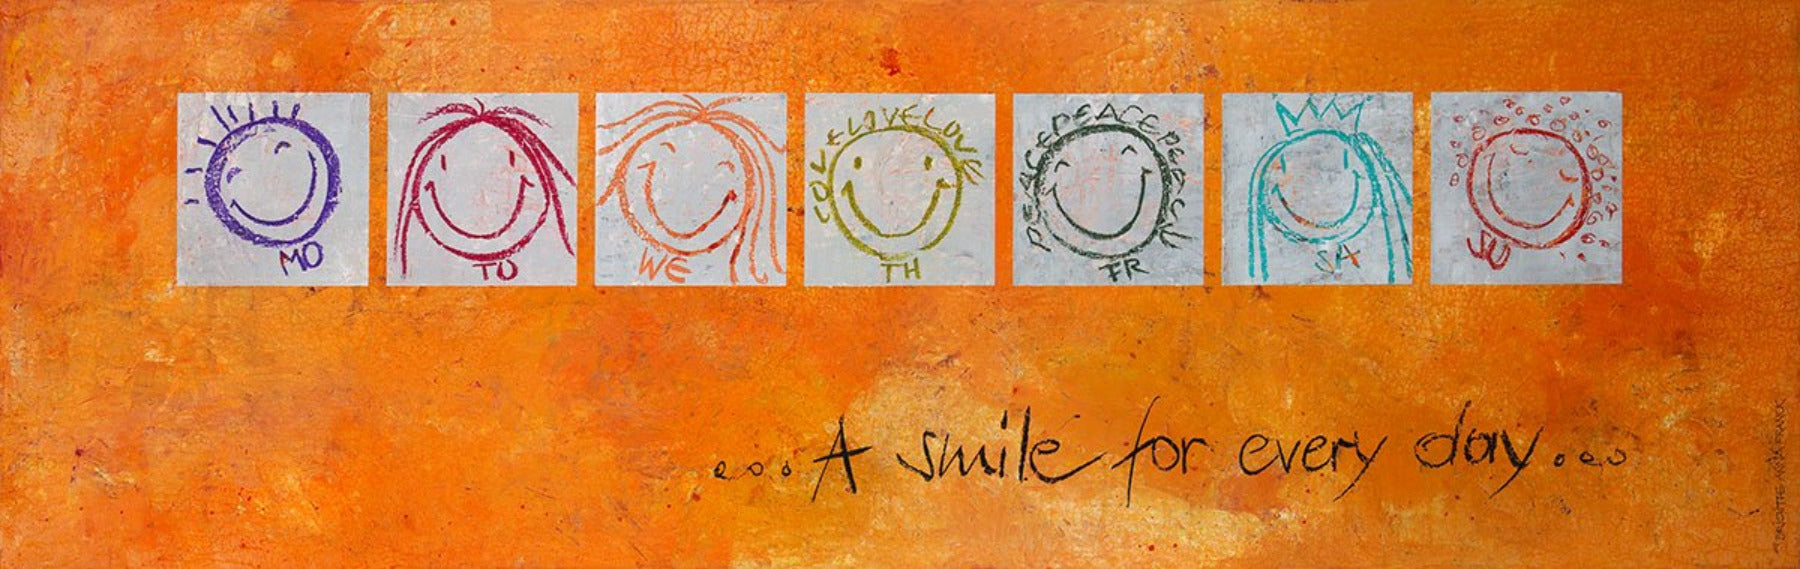 Wandbild \'A smile Brigitte Anna every day for Franck von - orange